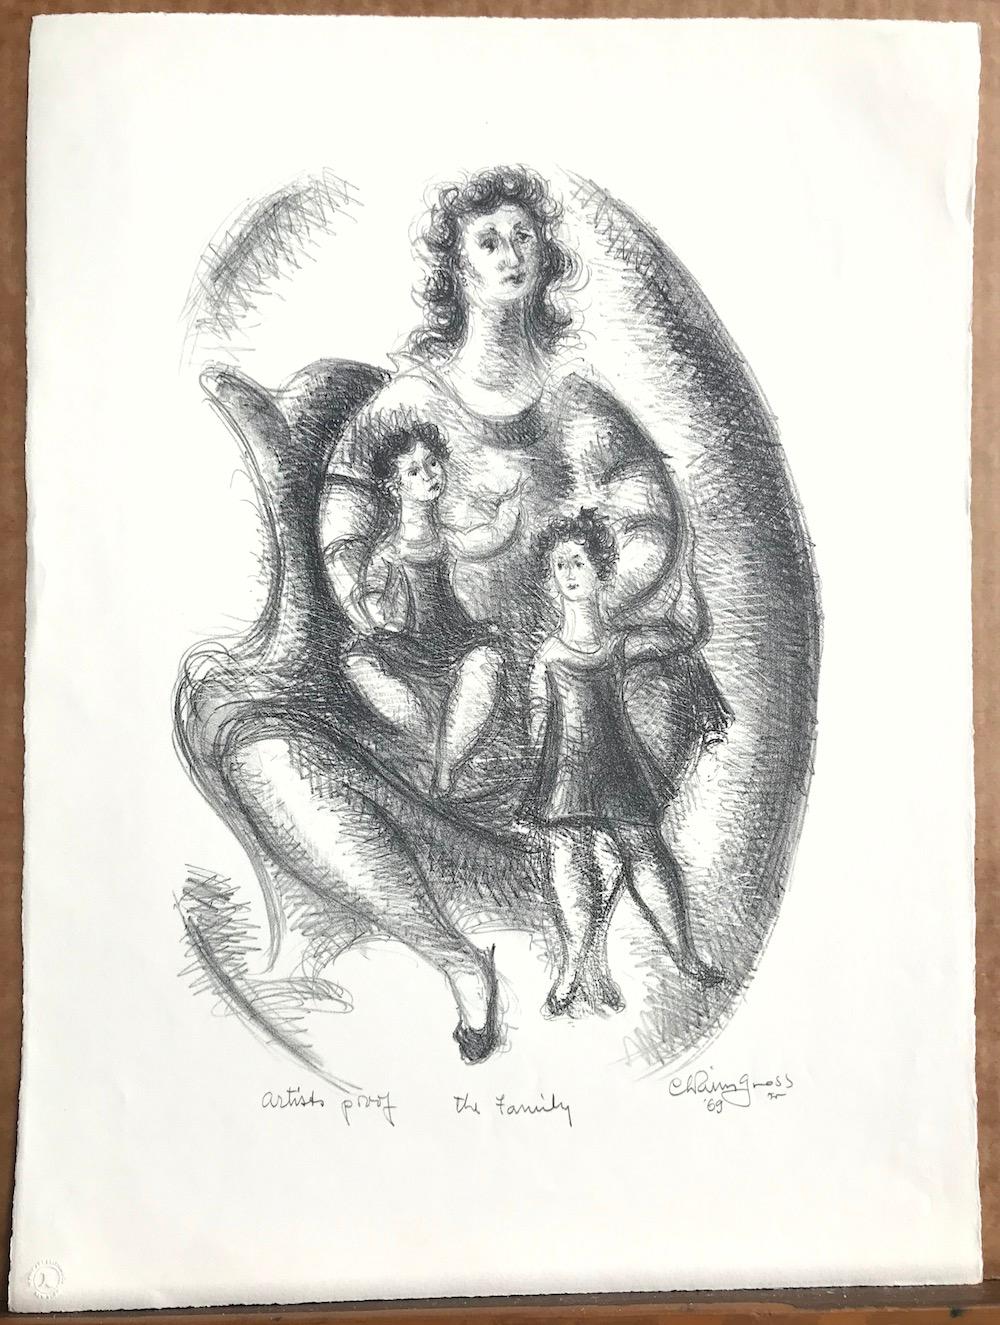 THE FAMILY est une lithographie originale sur pierre, dessinée à la main, de l'artiste/sculpteur américain Chaim Gross. Charmante étude de figure d'une femme assise accompagnée de ses enfants, un jeune garçon et une jeune fille.  THE FAMILY a été